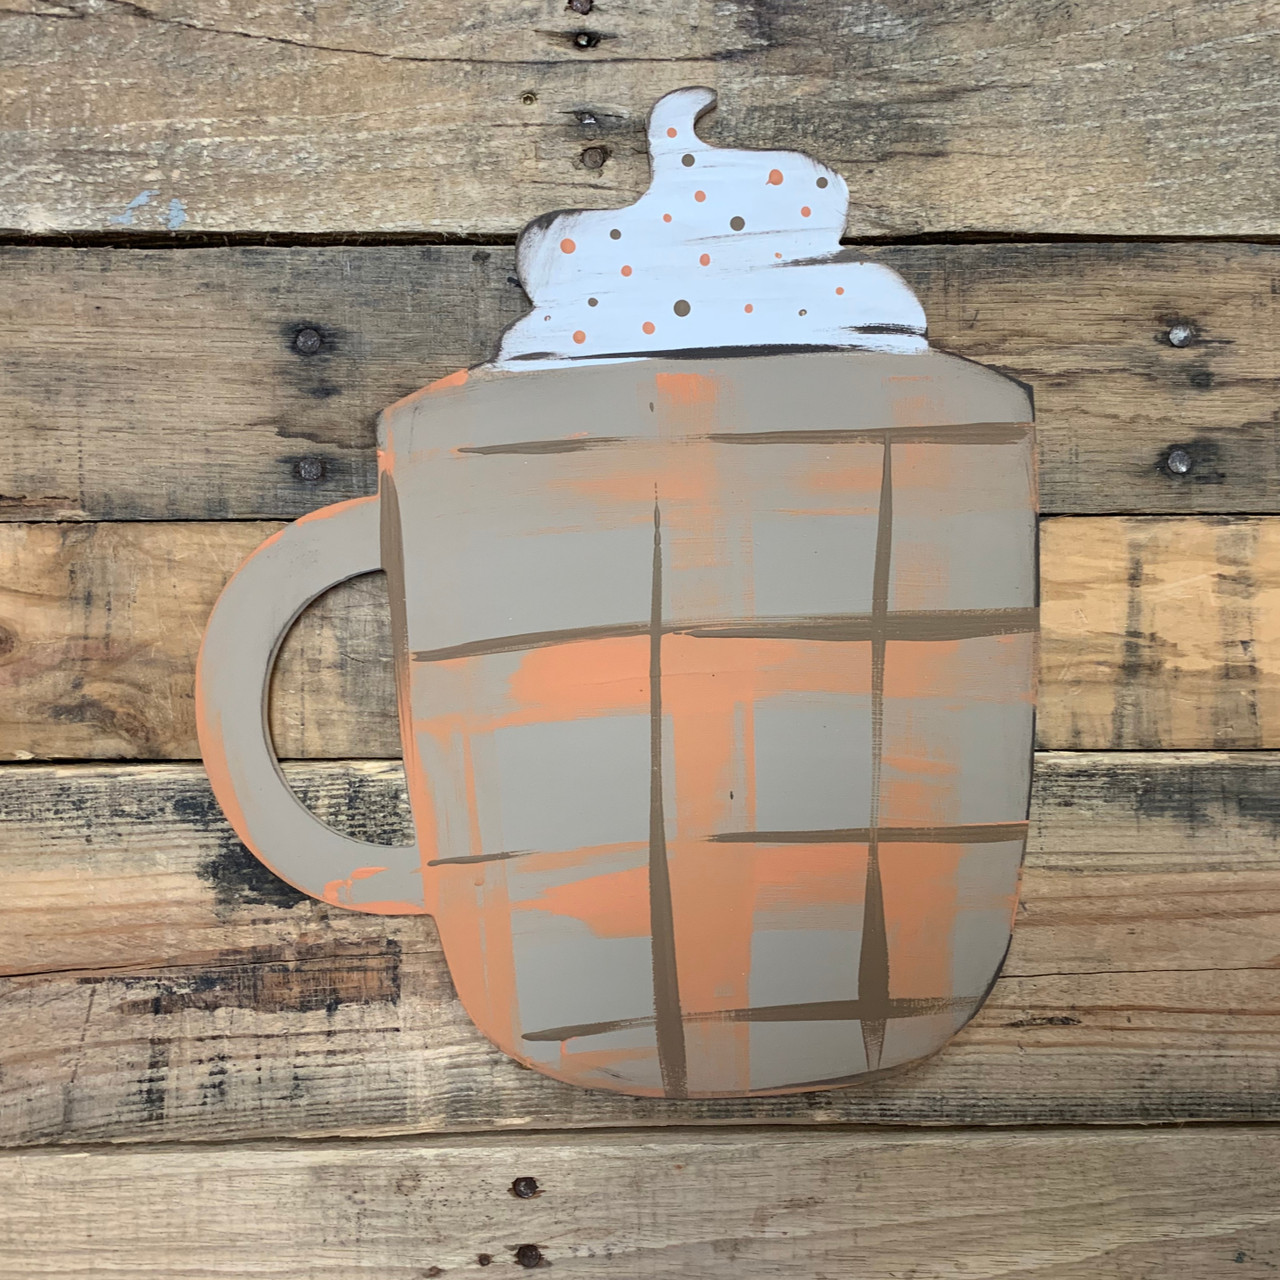 250 ml Wooden Latte Art Mug